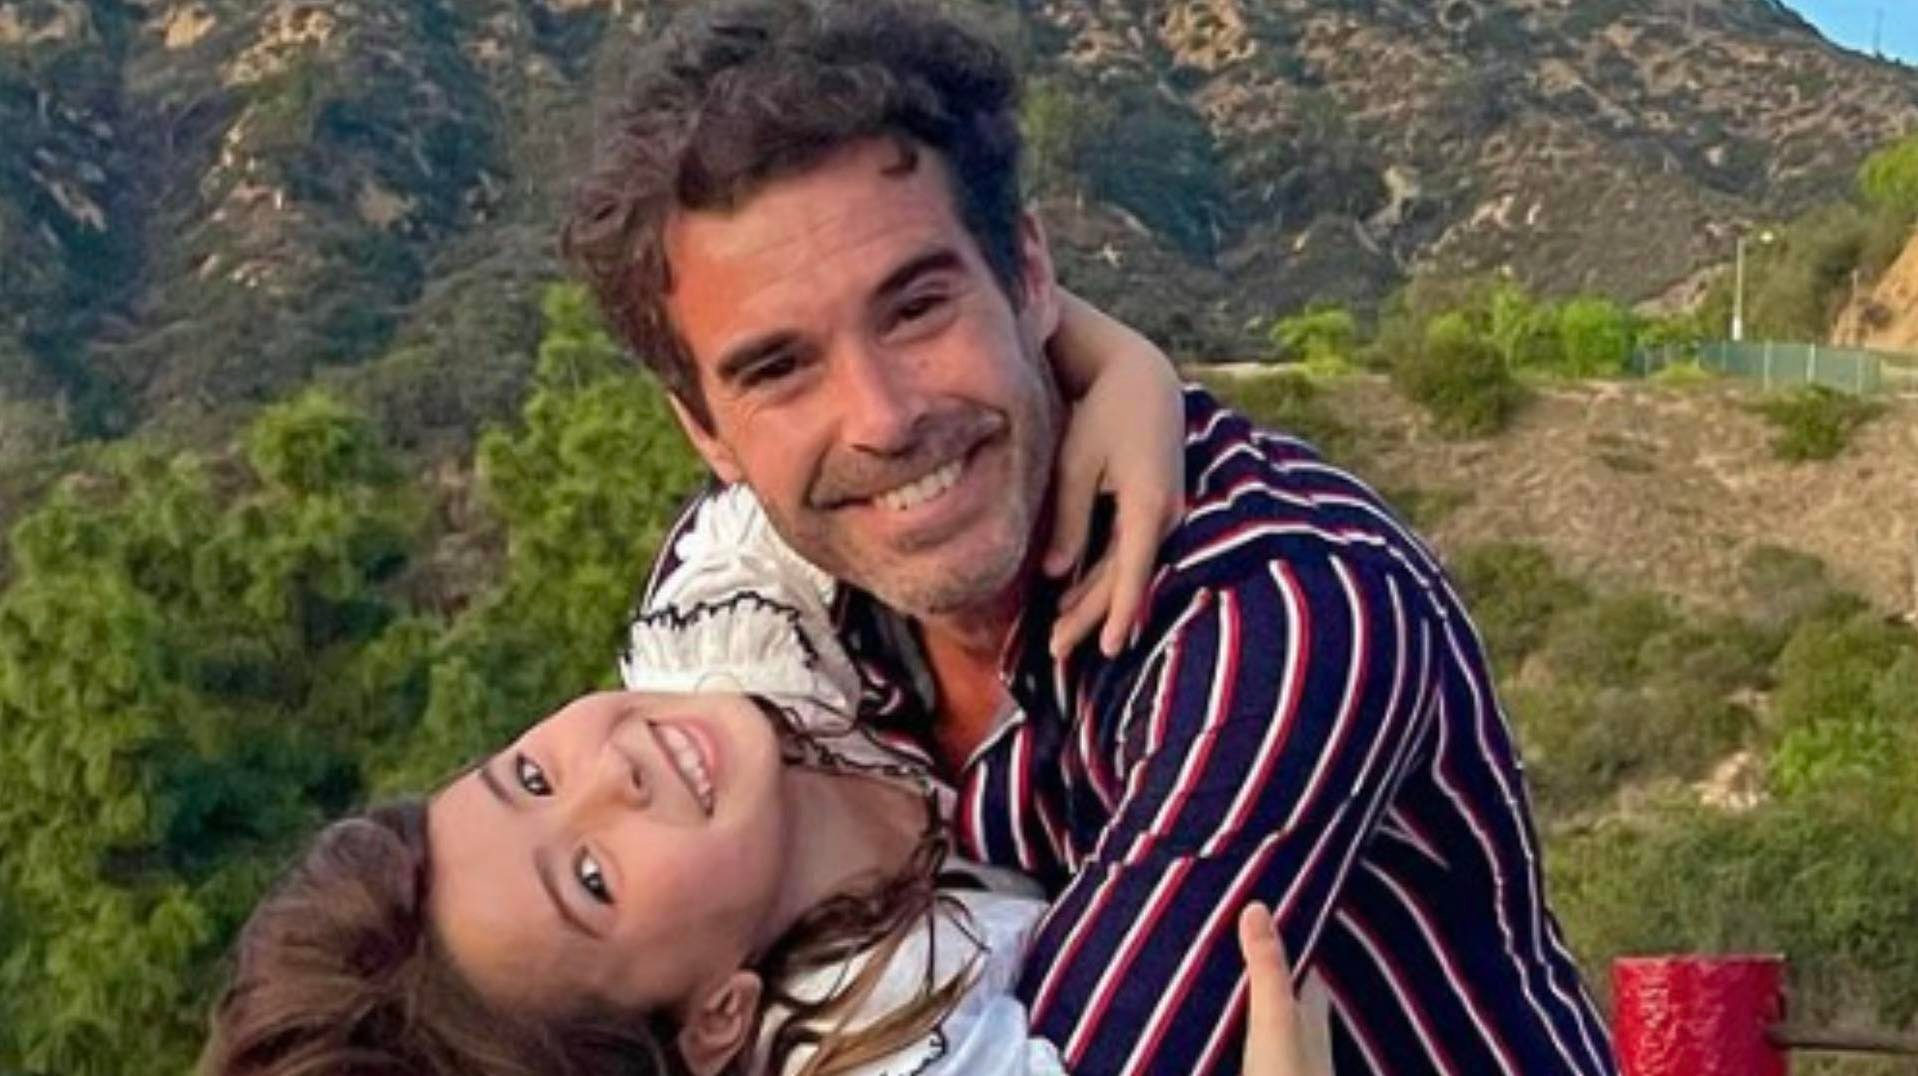 Nicolás Cabré enterneció a sus fans con una tierna foto  junto a su hija compartiendo una de sus pasiones: <<Hoy tocó…>>